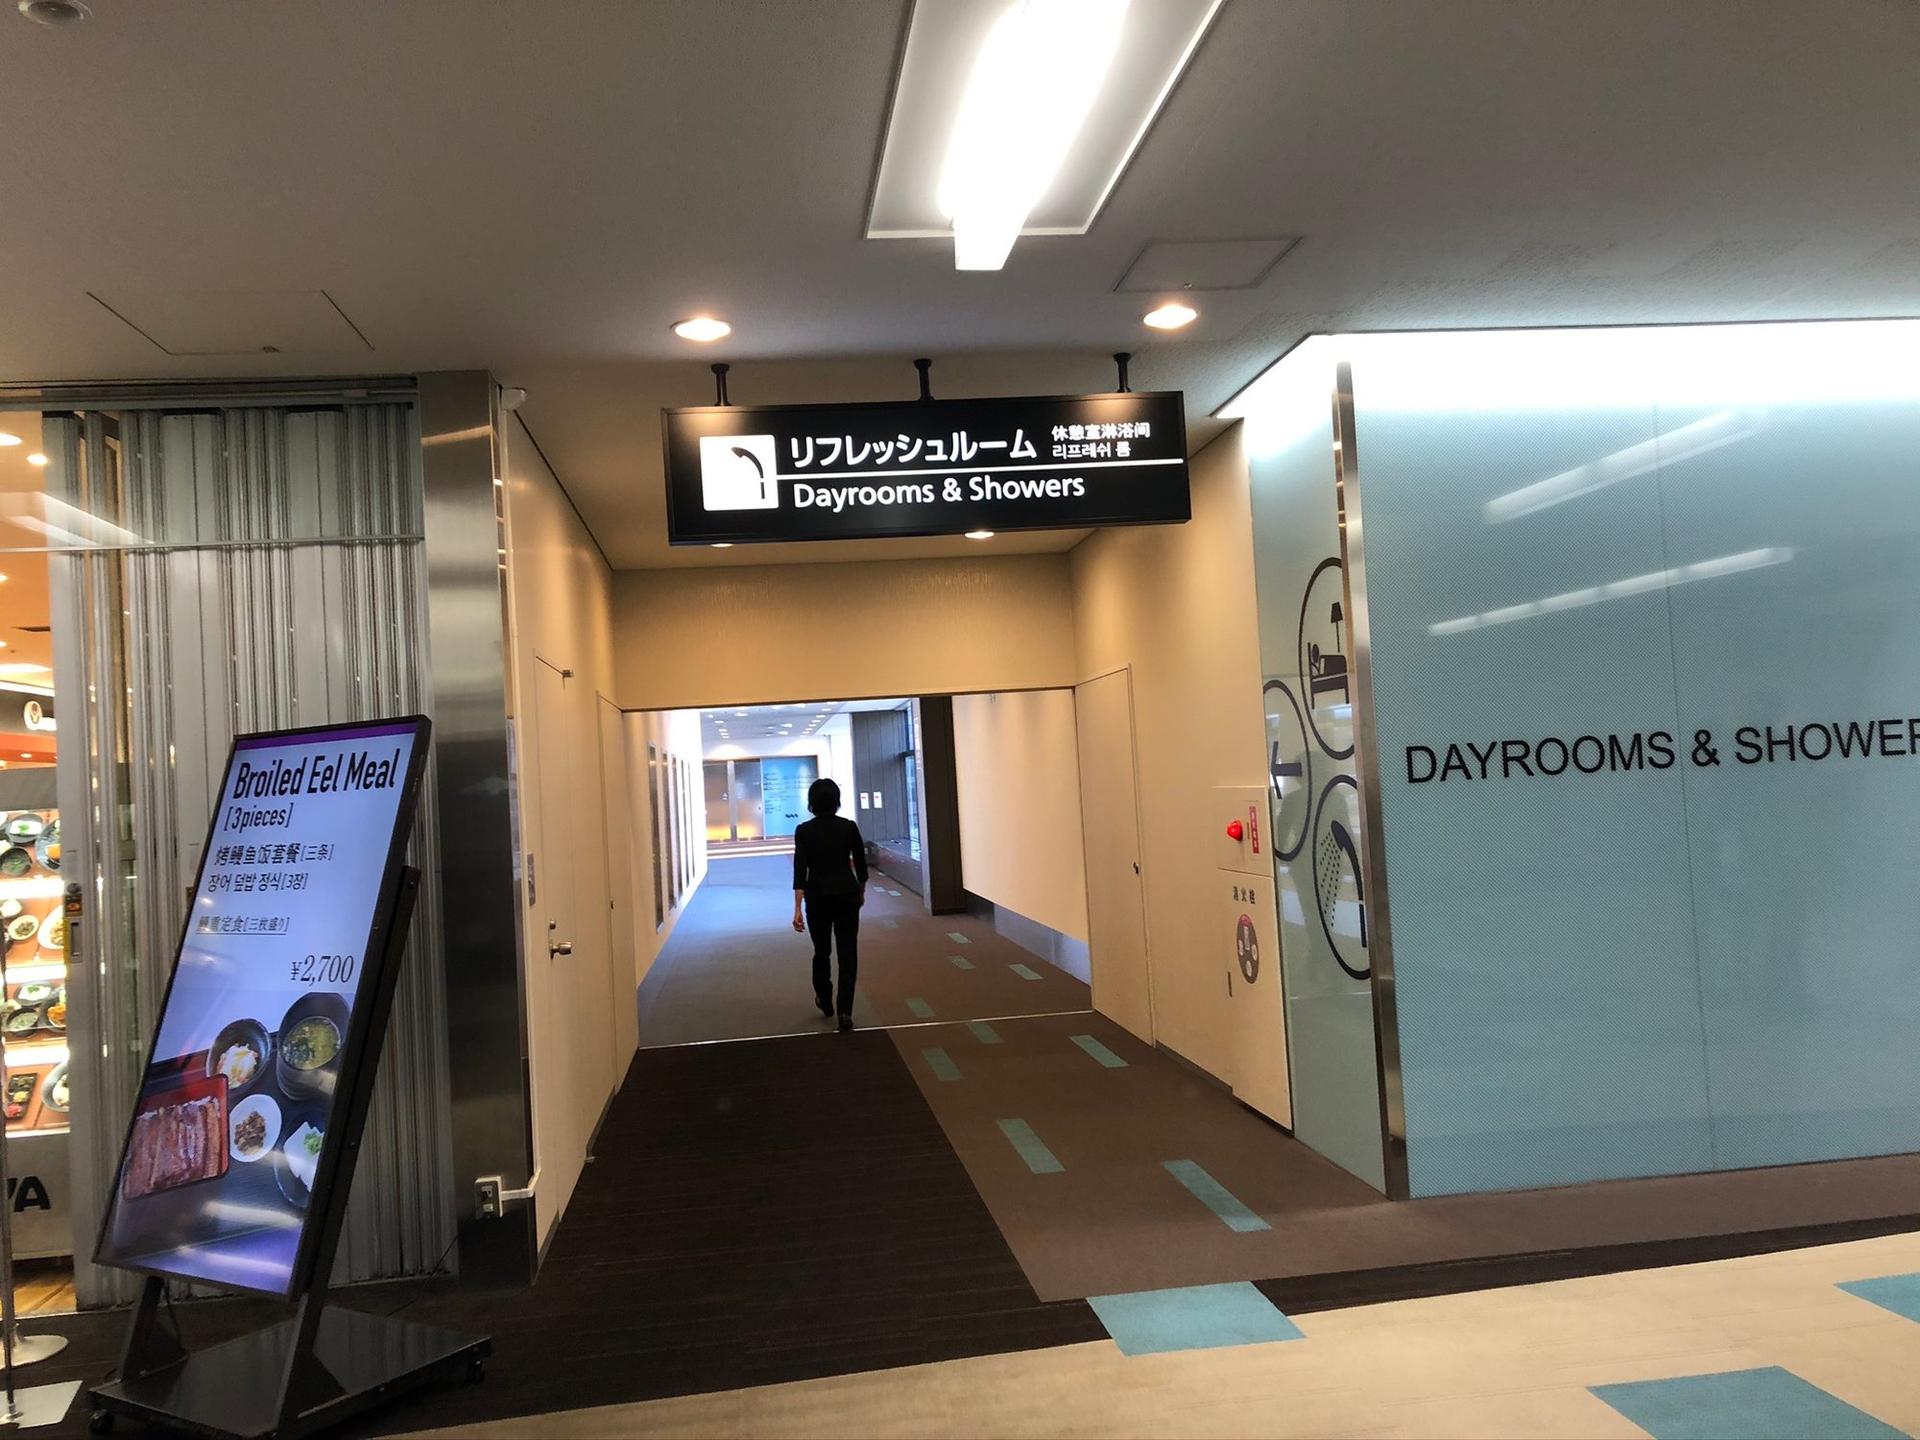 Narita Airport Dayrooms & Showers image 8 of 8